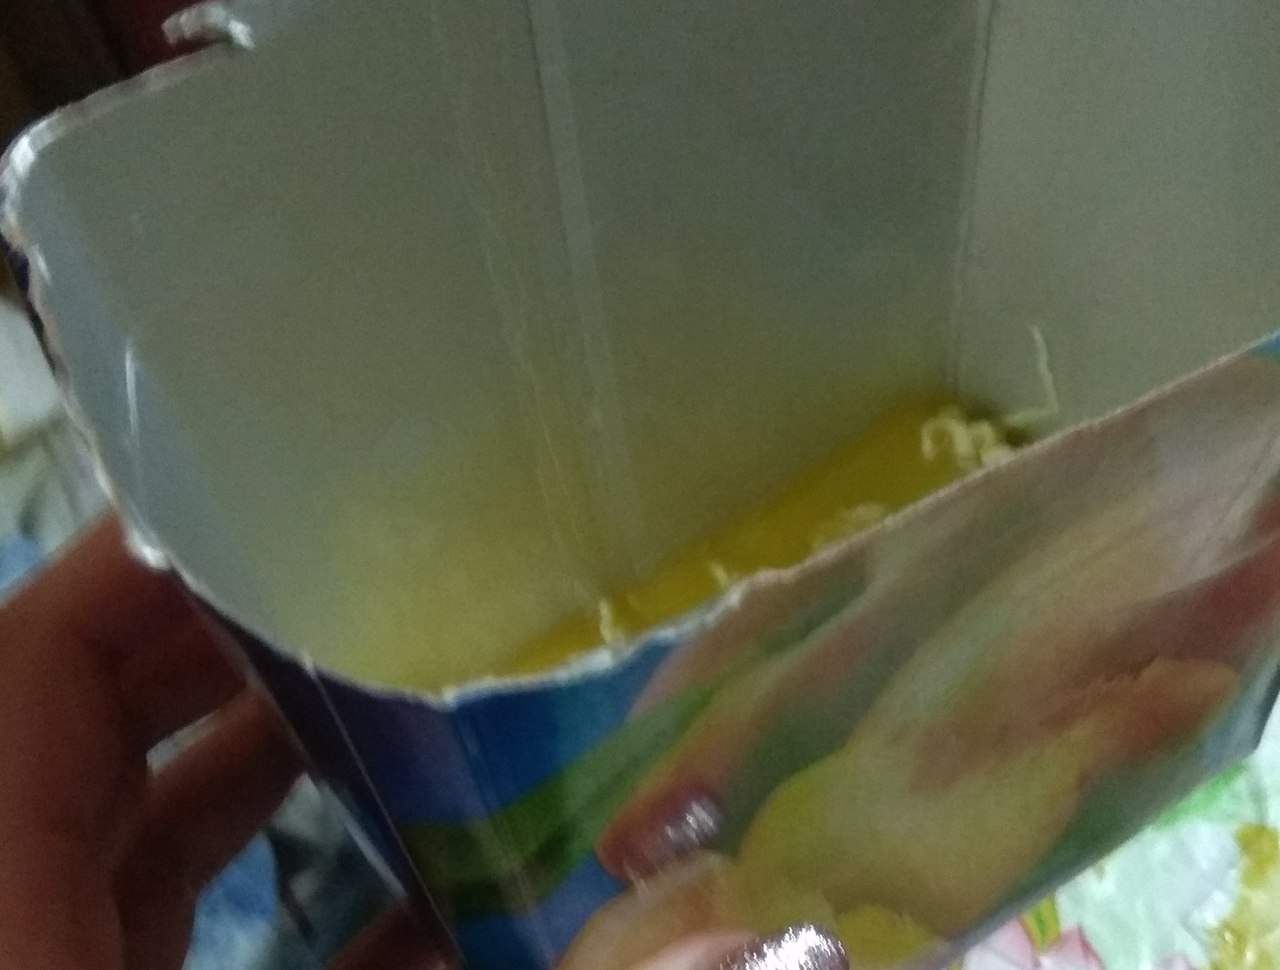 Харьковчанка обнаружила макароны на дне упаковки сока 